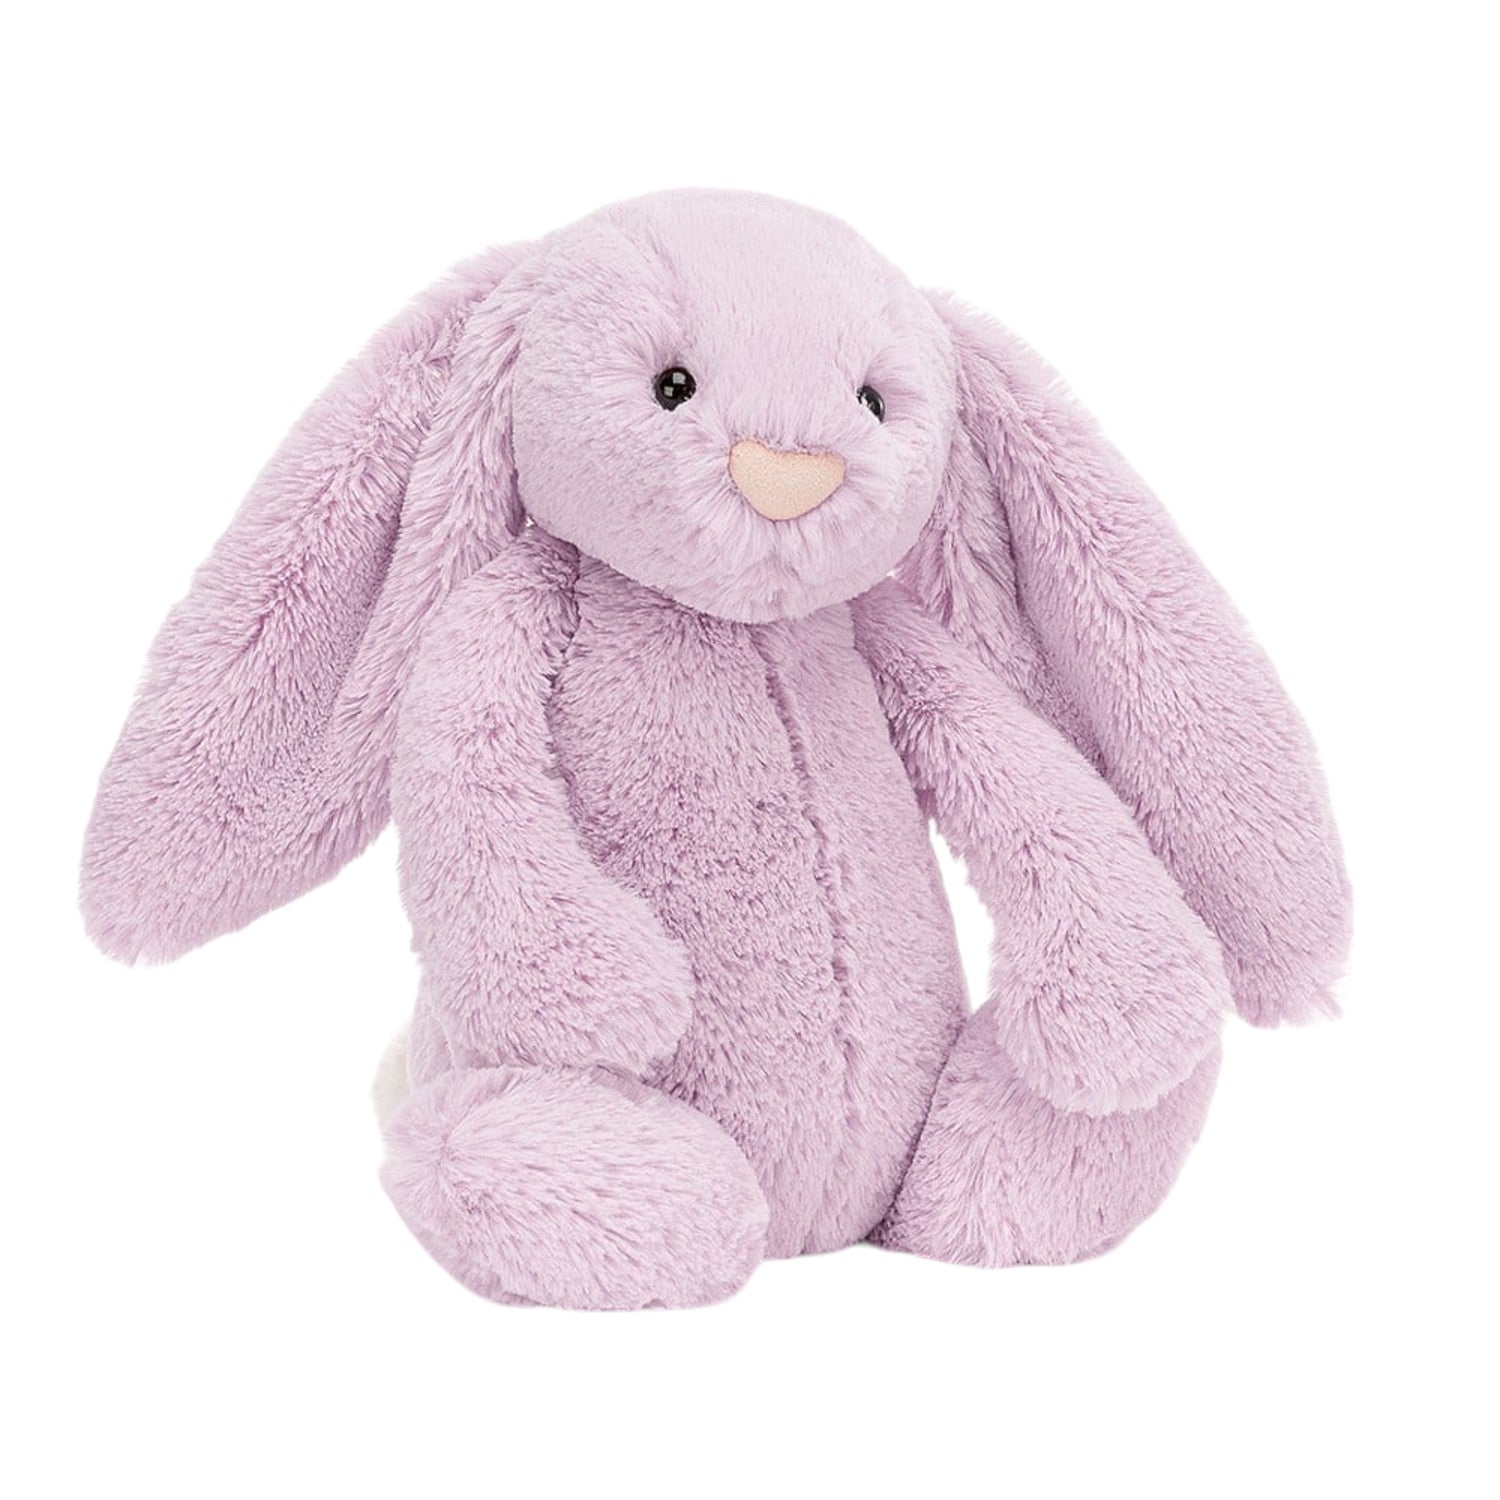 Bashful Bunny Original Lilac - Medium